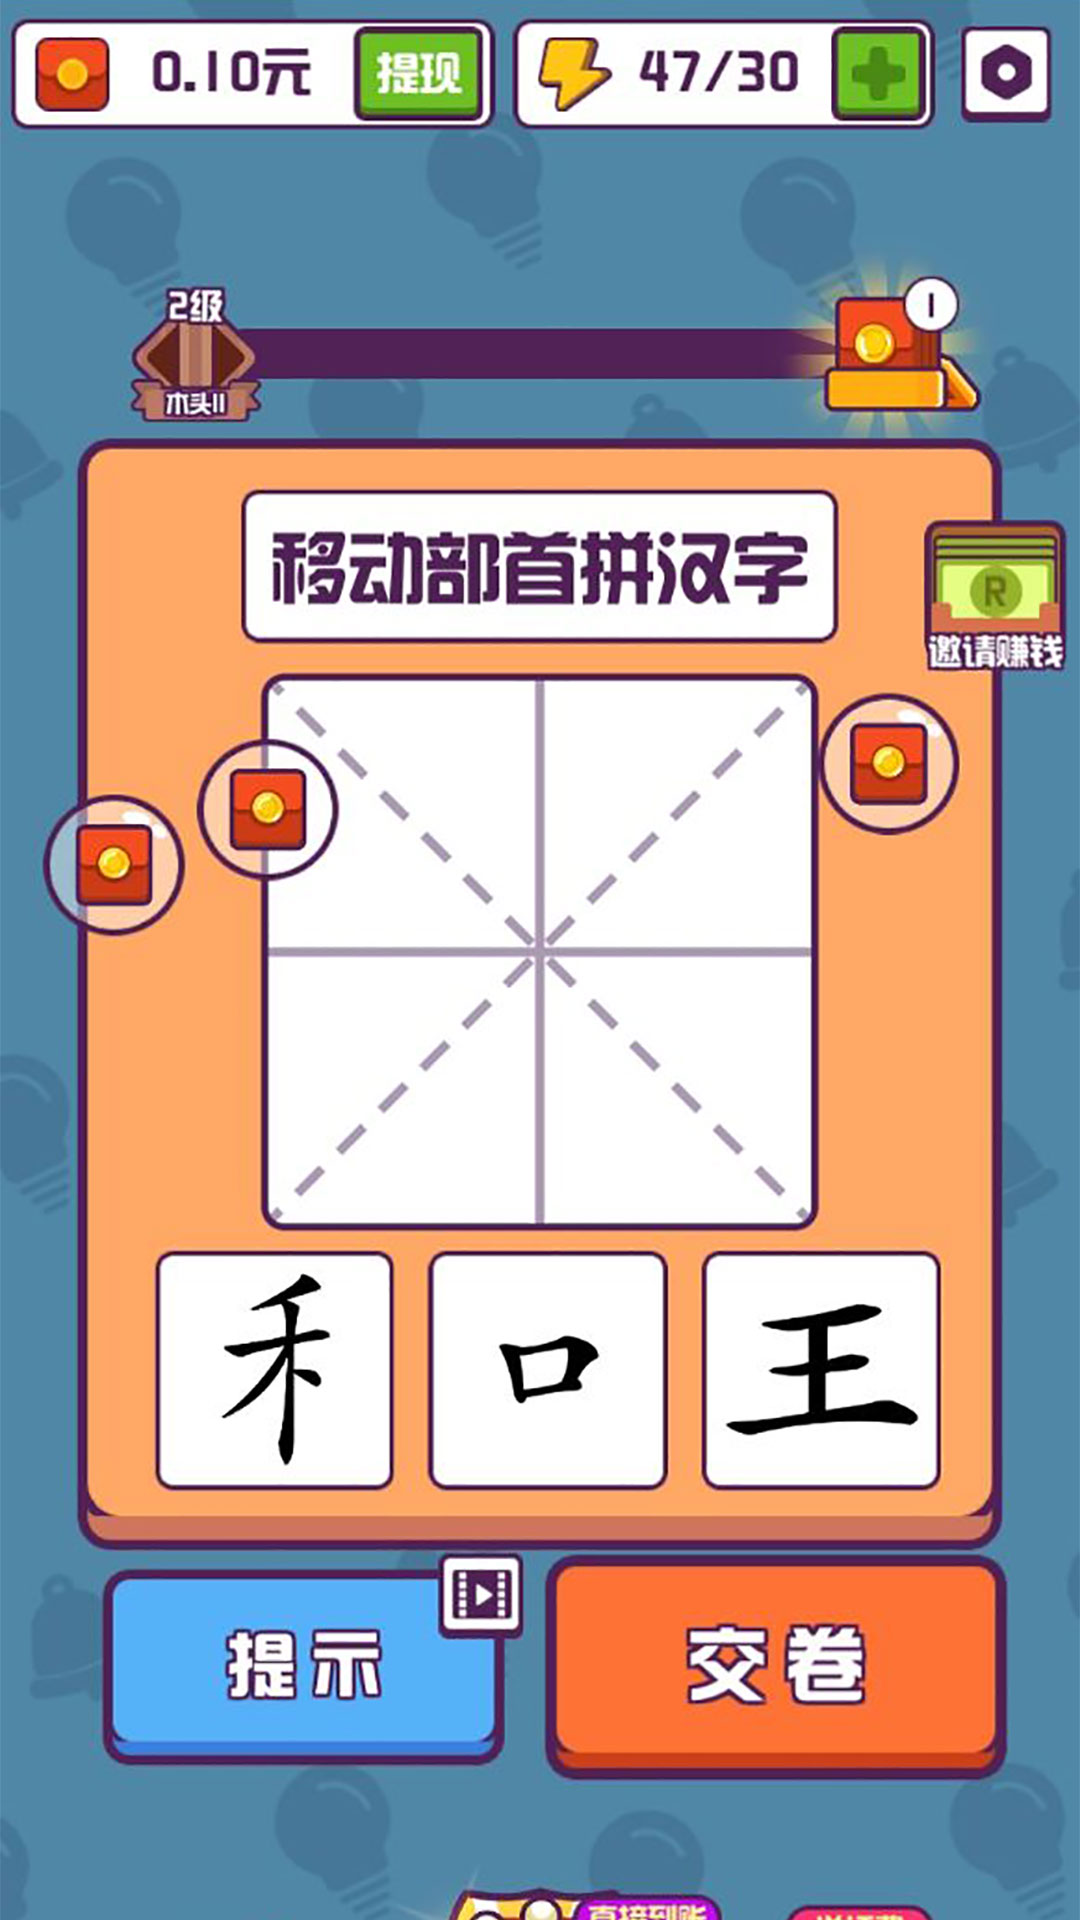 有趣的汉字游戏首充号续冲,什么平台有活动